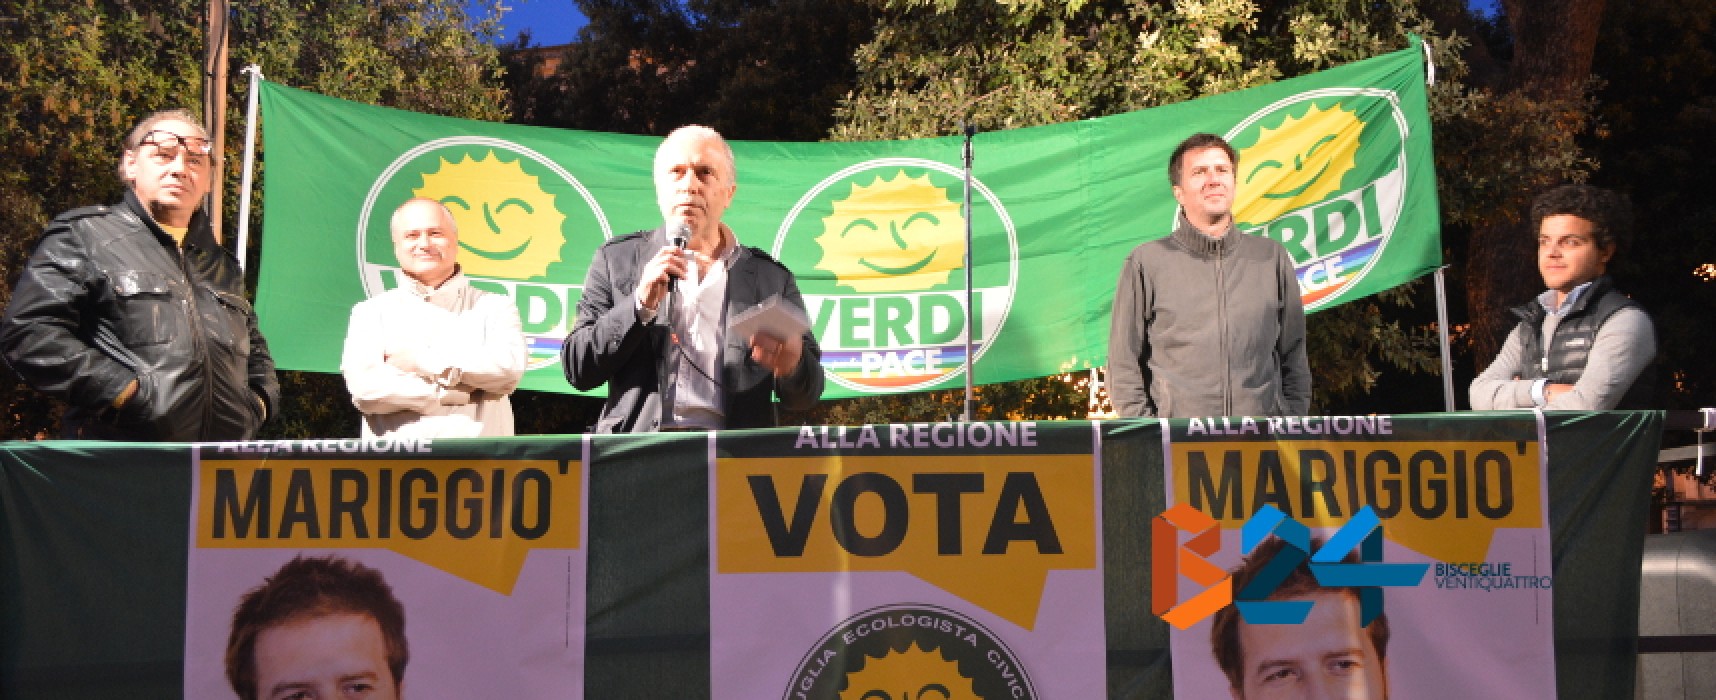 I Verdi lanciano la campagna #noninmionome contro le scelte dell’amministrazione comunale